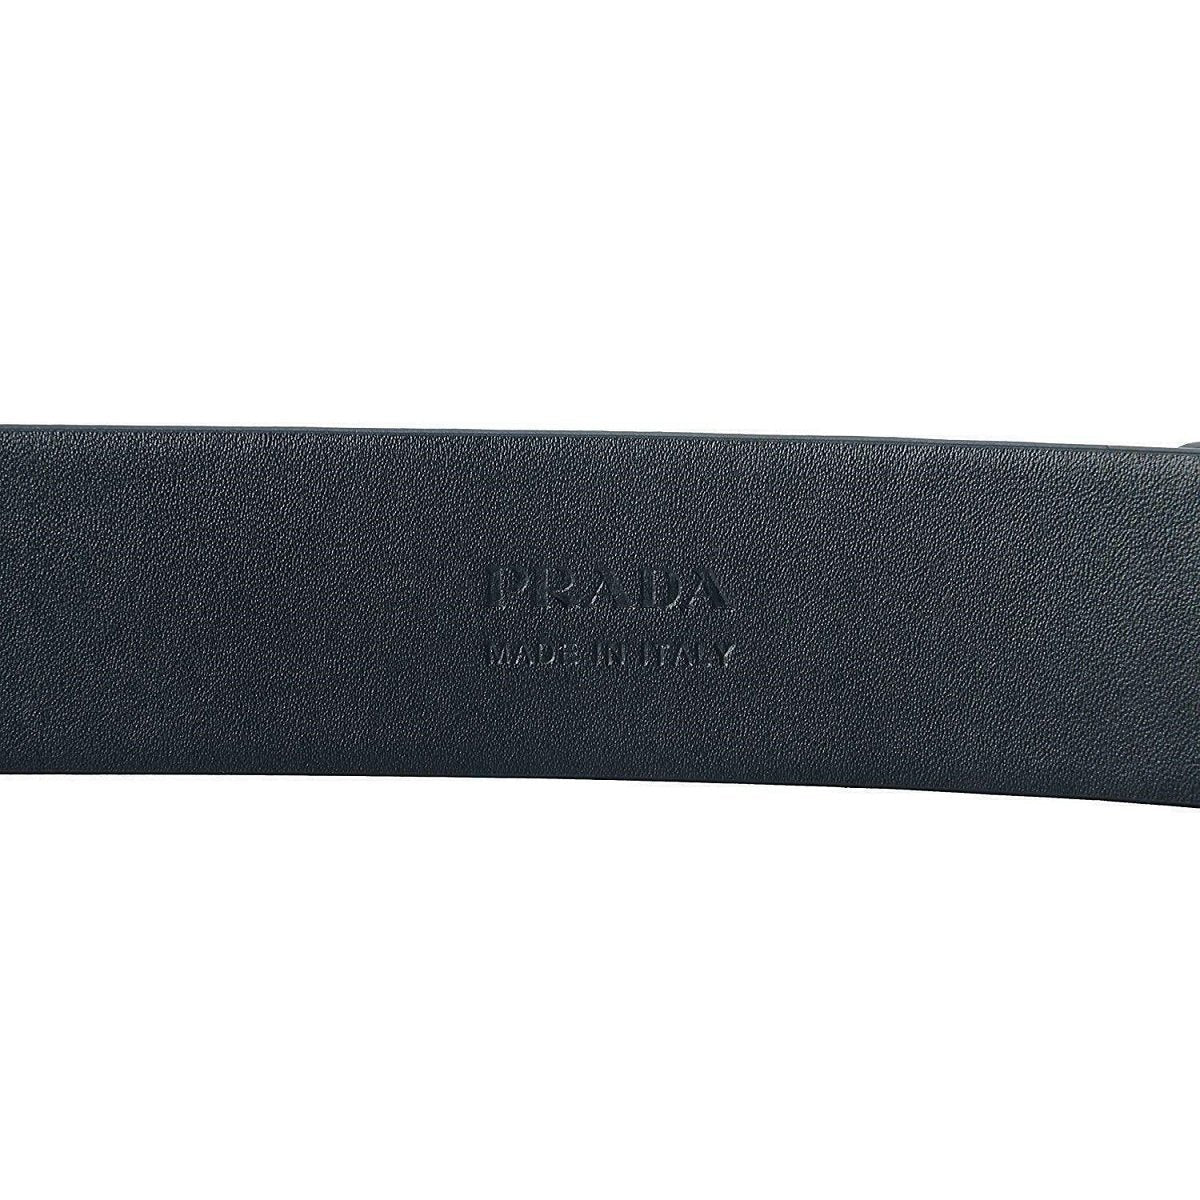 Prada Navy Saffiano Leather Belt  Silver Belt Buckle 2CM046 90-36 - LUXURYMRKT